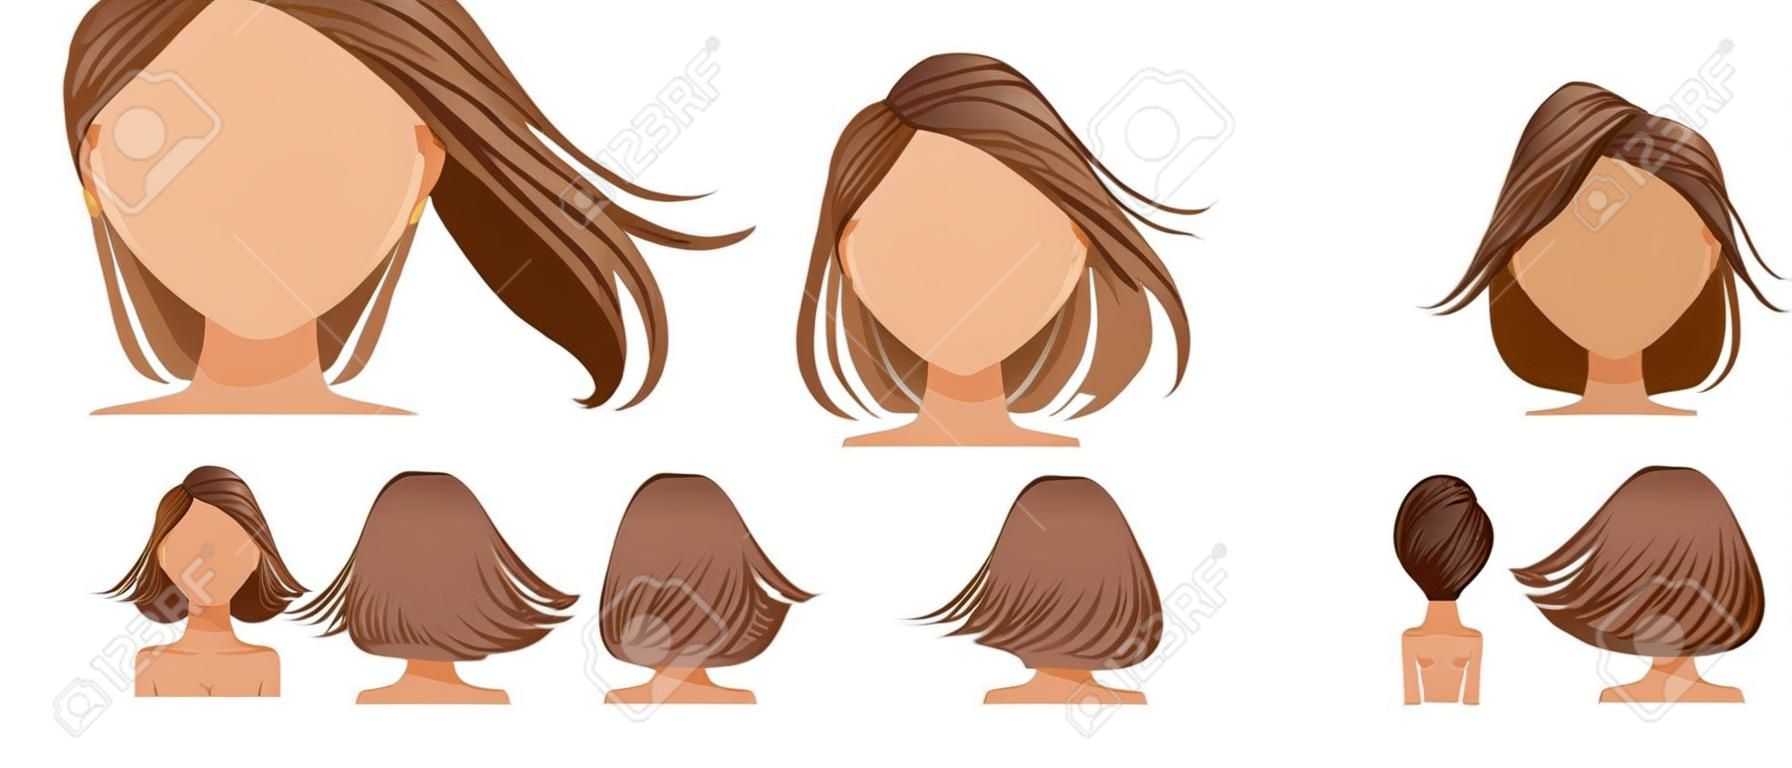 Haare geblasen Frauen eingestellt. Weitblick Die Haare sind wie weggeblasen. Vorne, hinten, links, rechts. Schöne Frisur braunes kurzes Haar der Frau. trendiger Haarschnitt. Vektor-Icon-Set isoliert auf weißem Hintergrund.